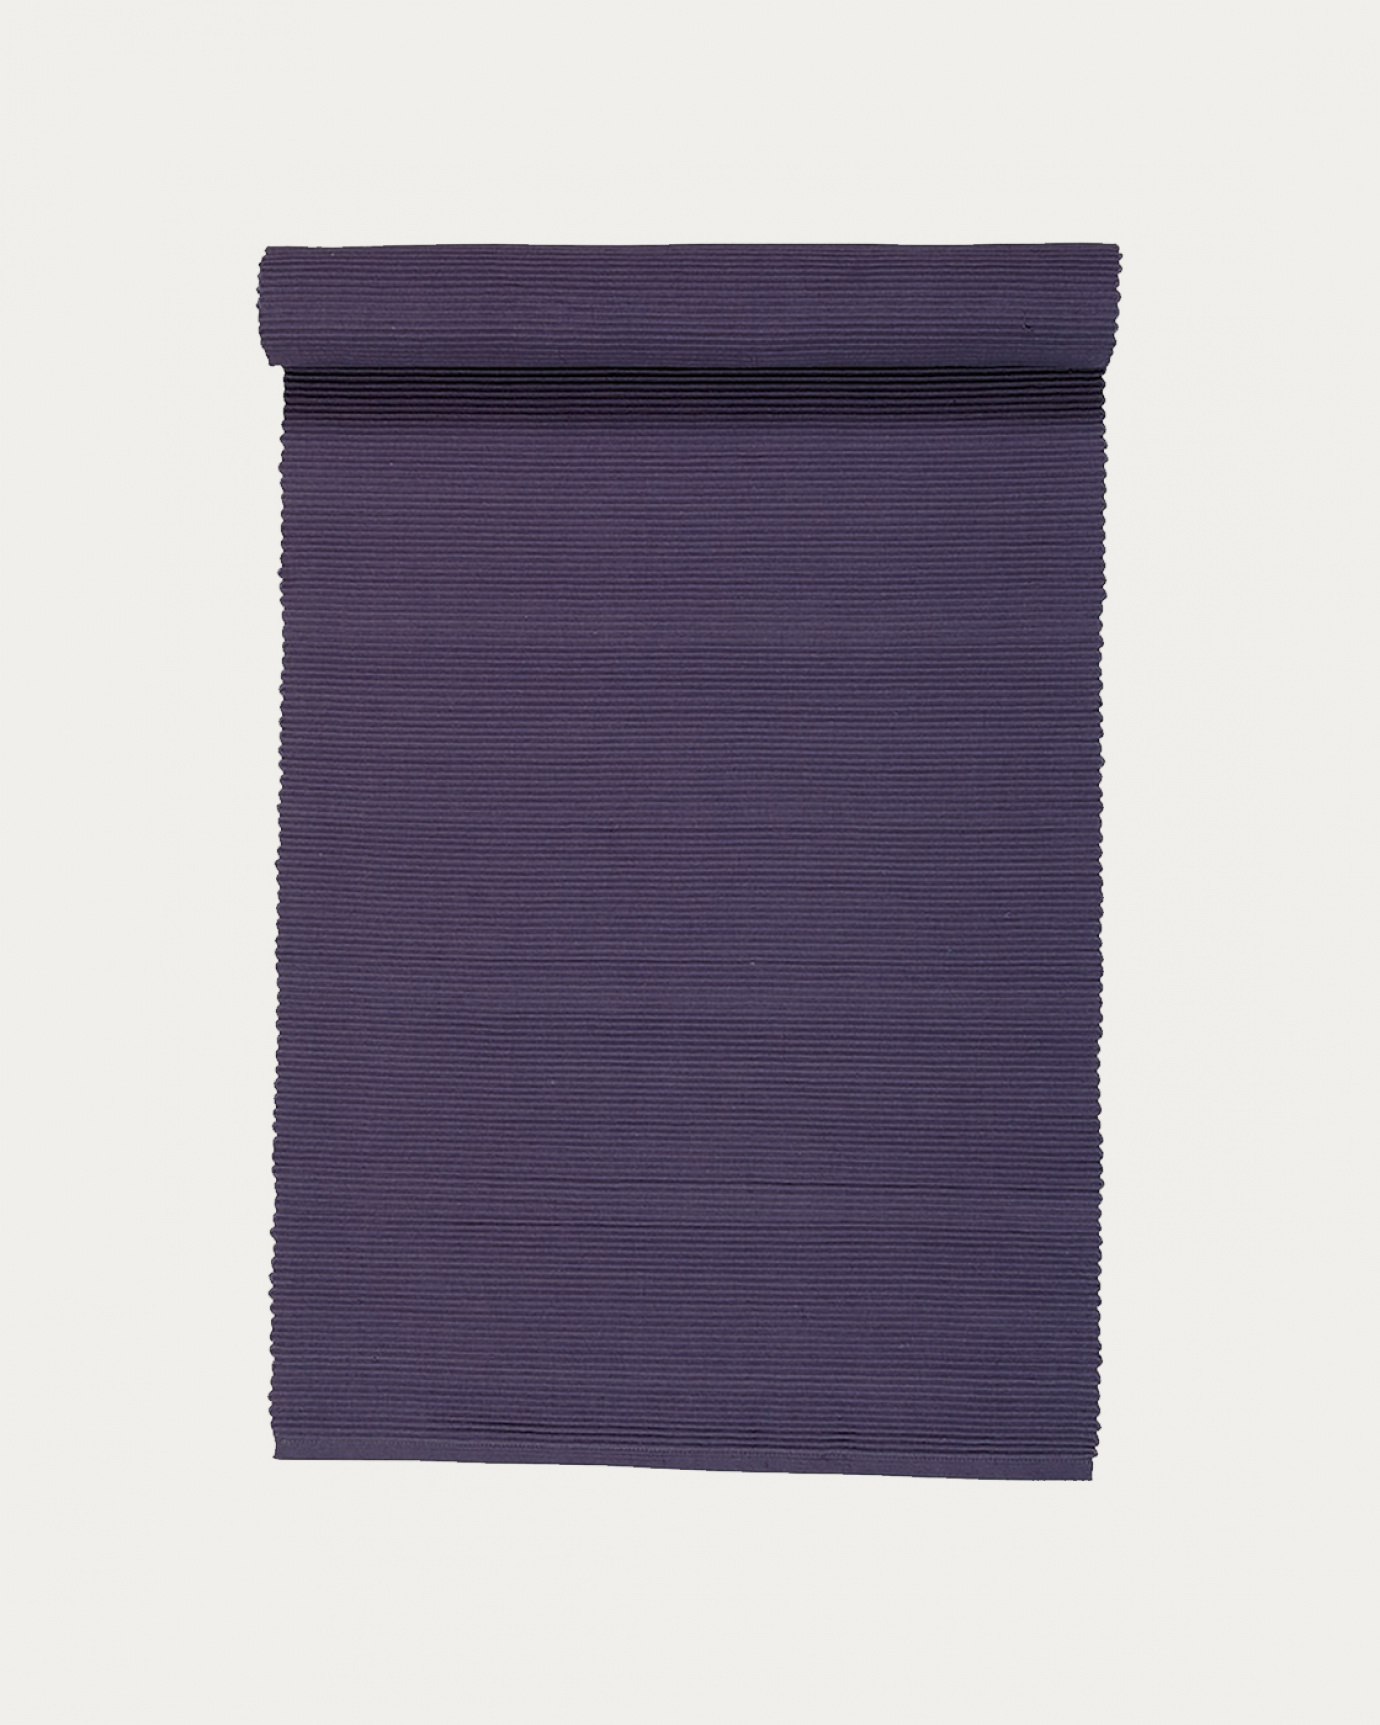 Image du produit chemin de table UNI violet aube en coton doux de qualité côtelée de LINUM DESIGN. Taille 45 x 150 cm.